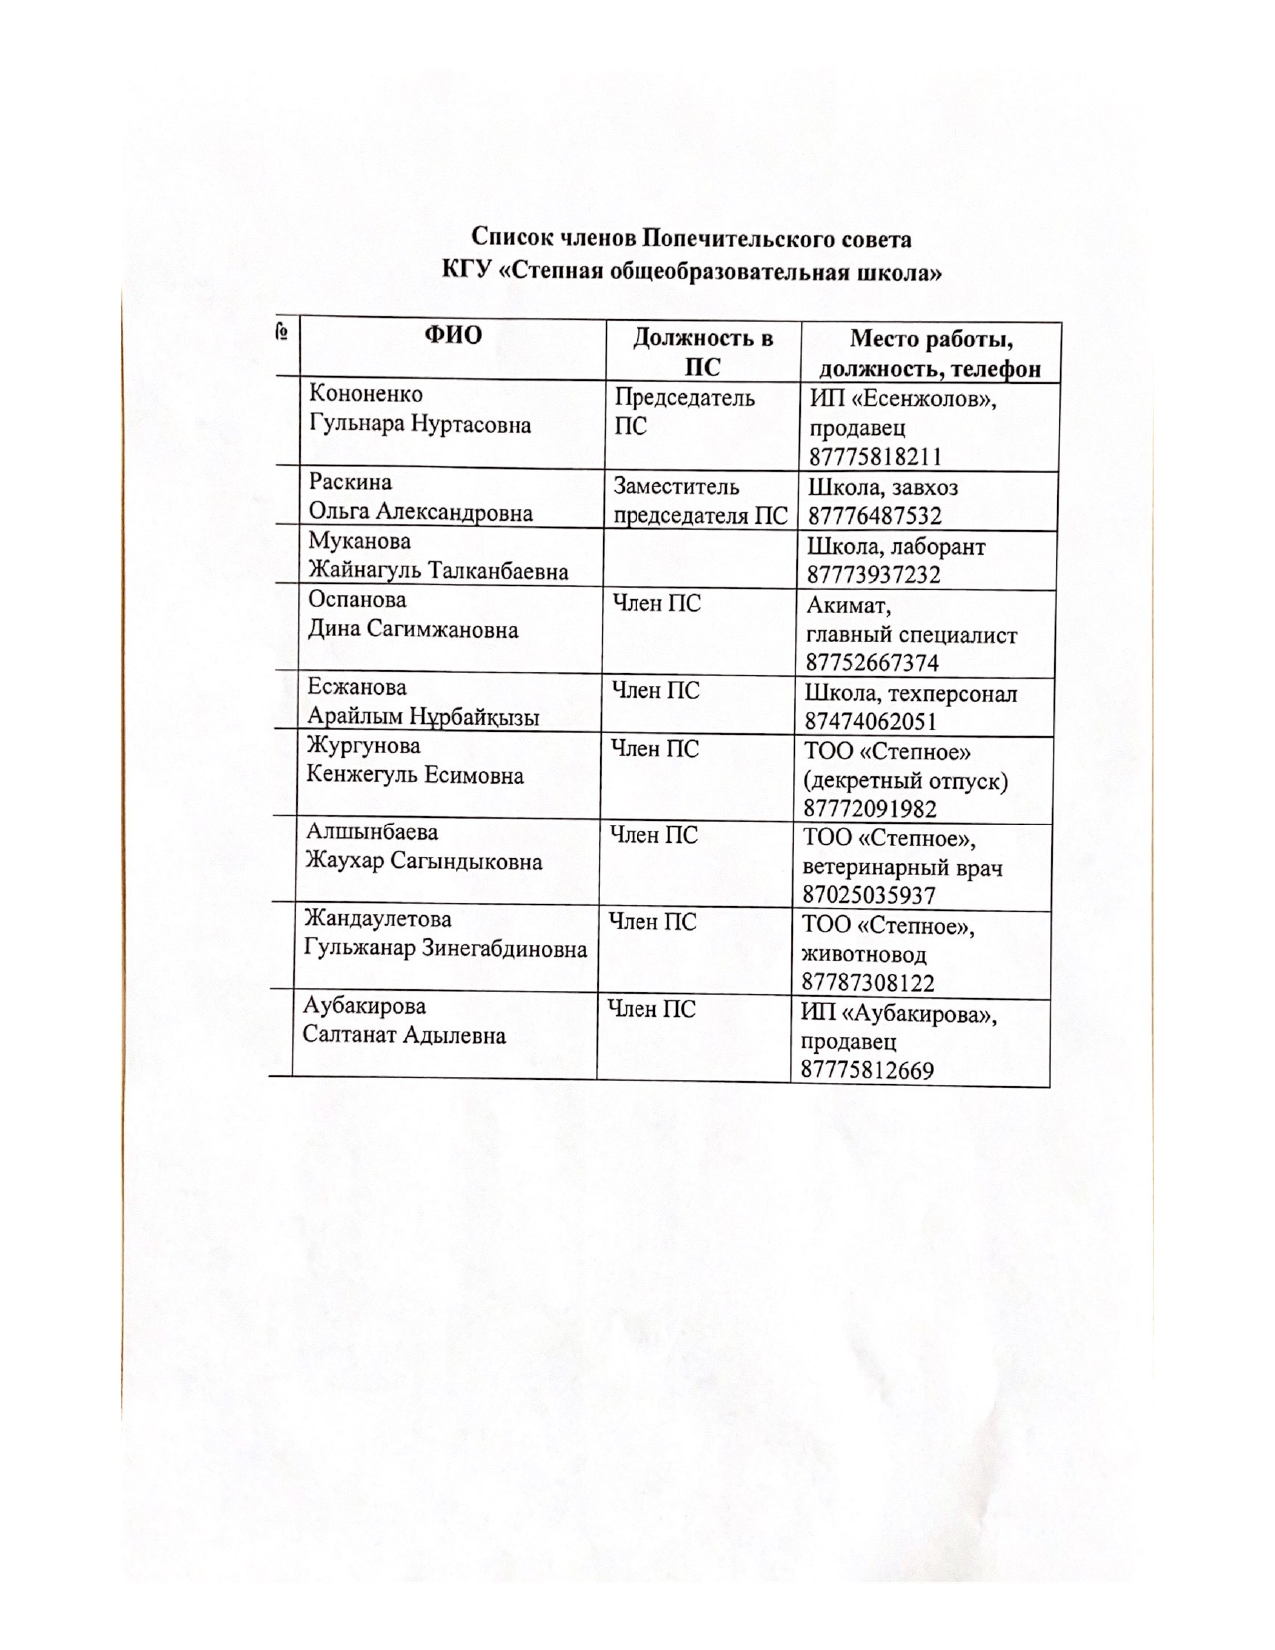 Список членов Попечительского совета page 0001